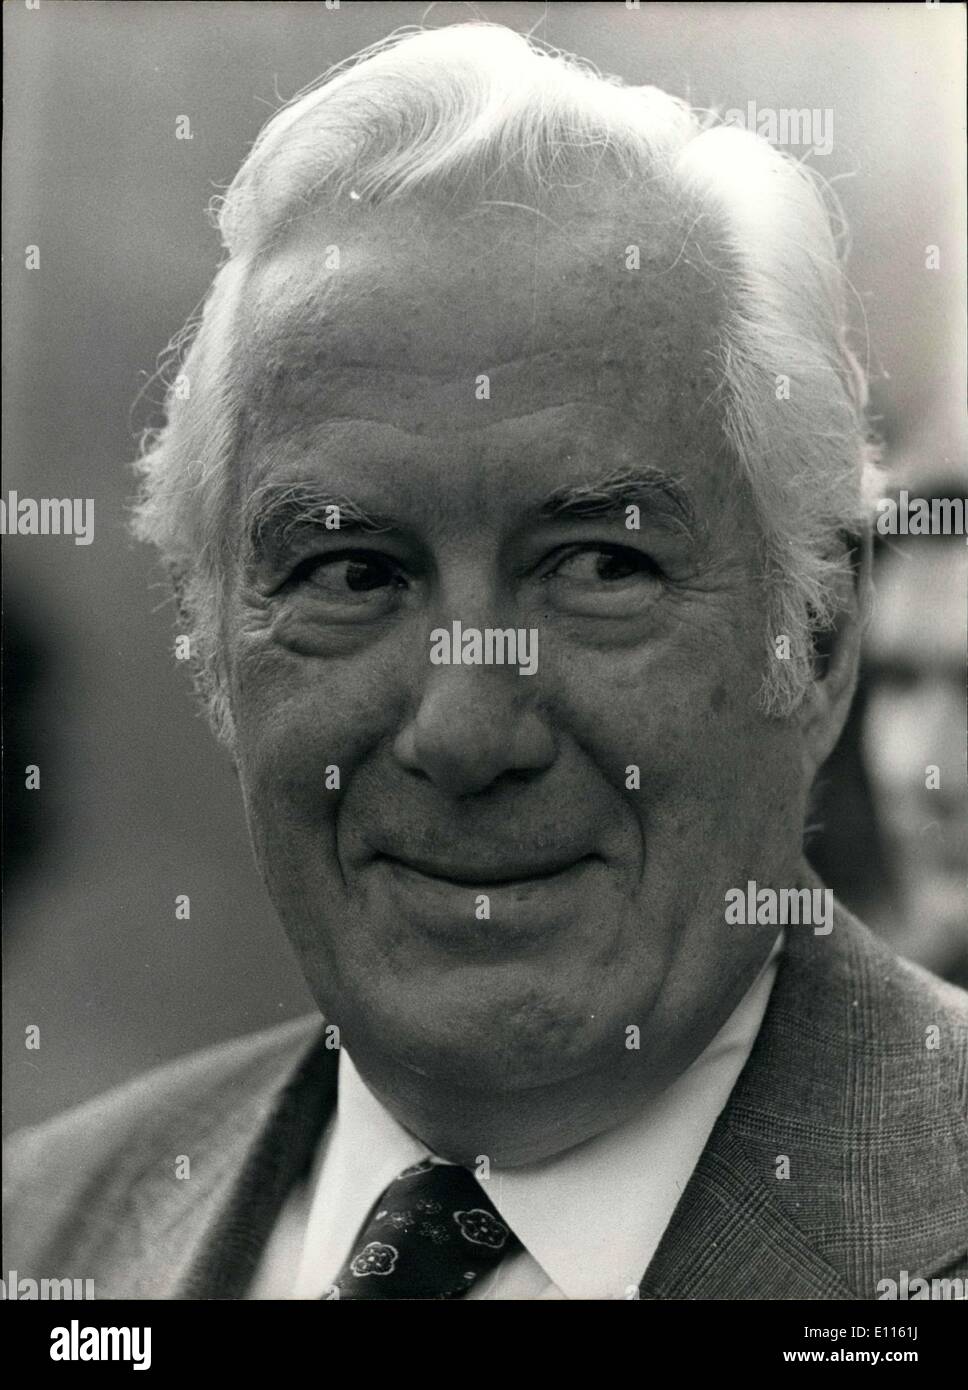 Septembre 13, 1975 - Le juge en chef Warren Burger a été reçu à l'Elysée par le président Valéry Giscard d'Estaing sur sa visite officielle en France. On le voit ici de quitter le palais. Banque D'Images